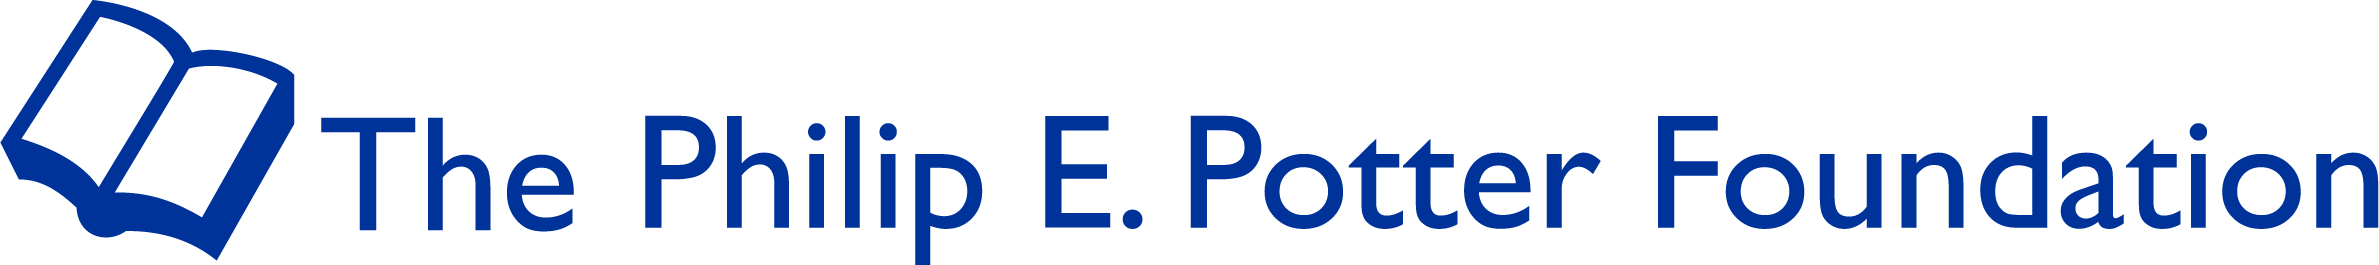 The Philip E. Potter Foundation